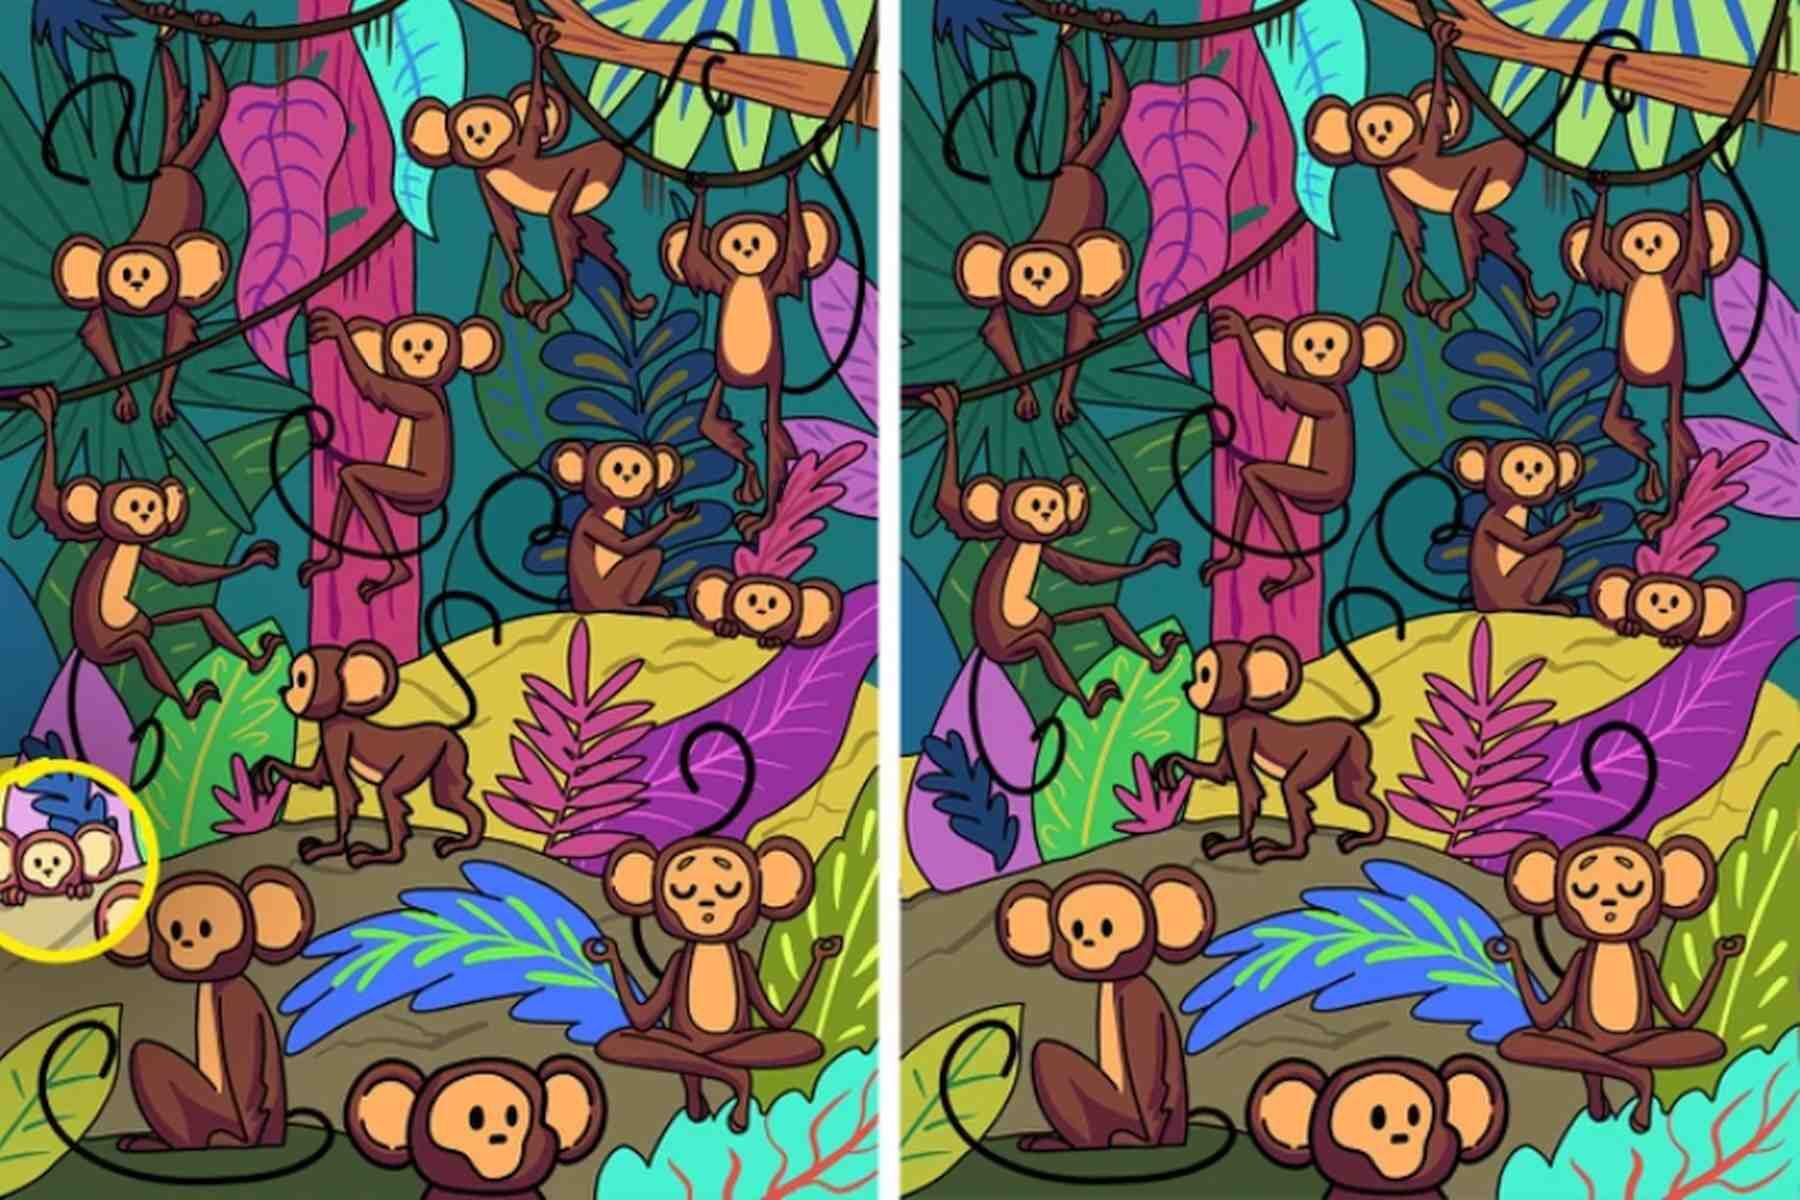 RETO VISUAL | Aquí se indica la diferencia entre las dos imágenes de monos. (Foto: genial.guru)